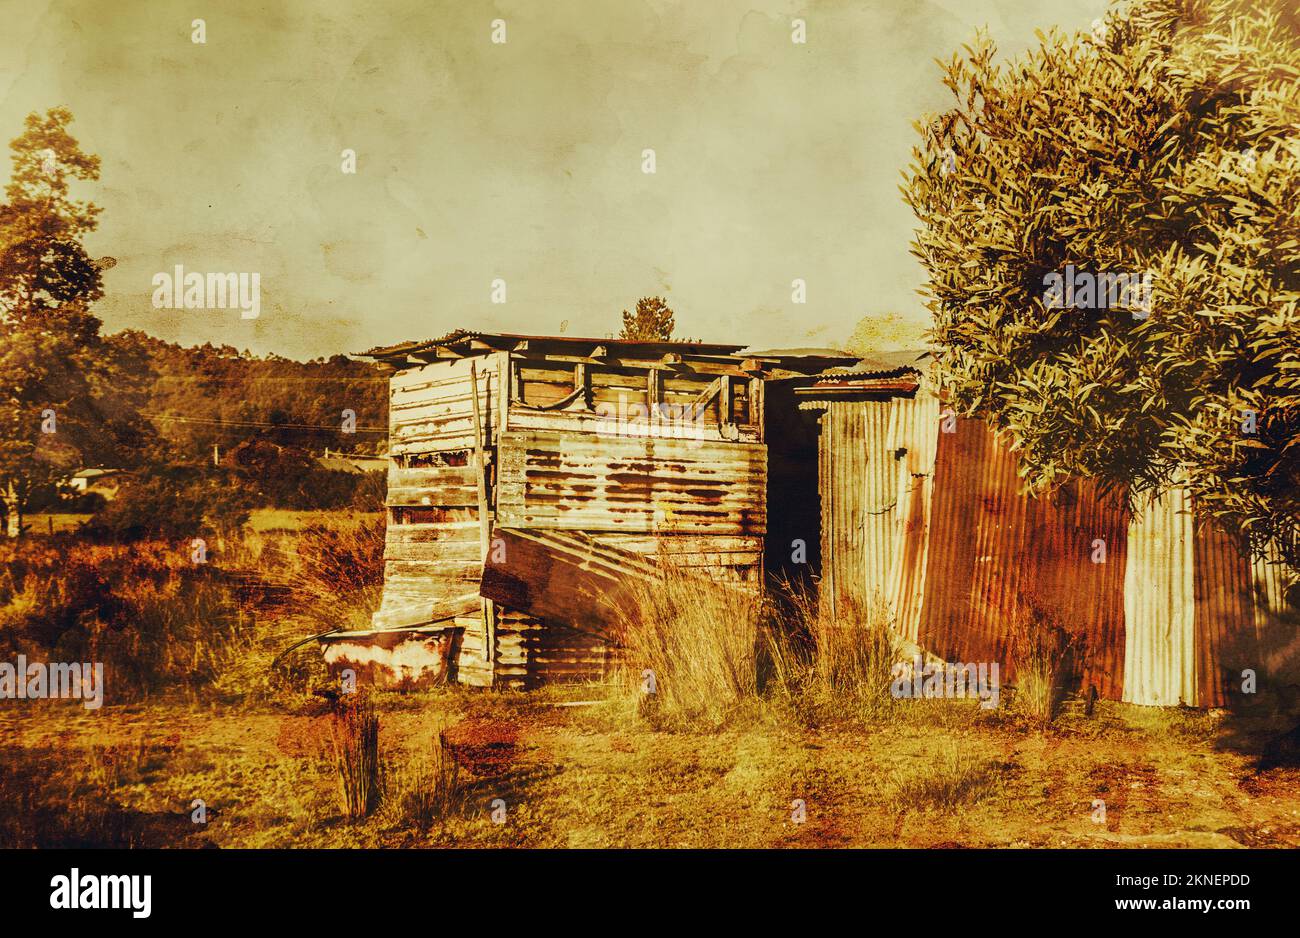 Grunge Farming Geschichte mit einem wilden West-australischen Scheune in alten rauen Stil. Zeehan Tasmanien Australien Stockfoto